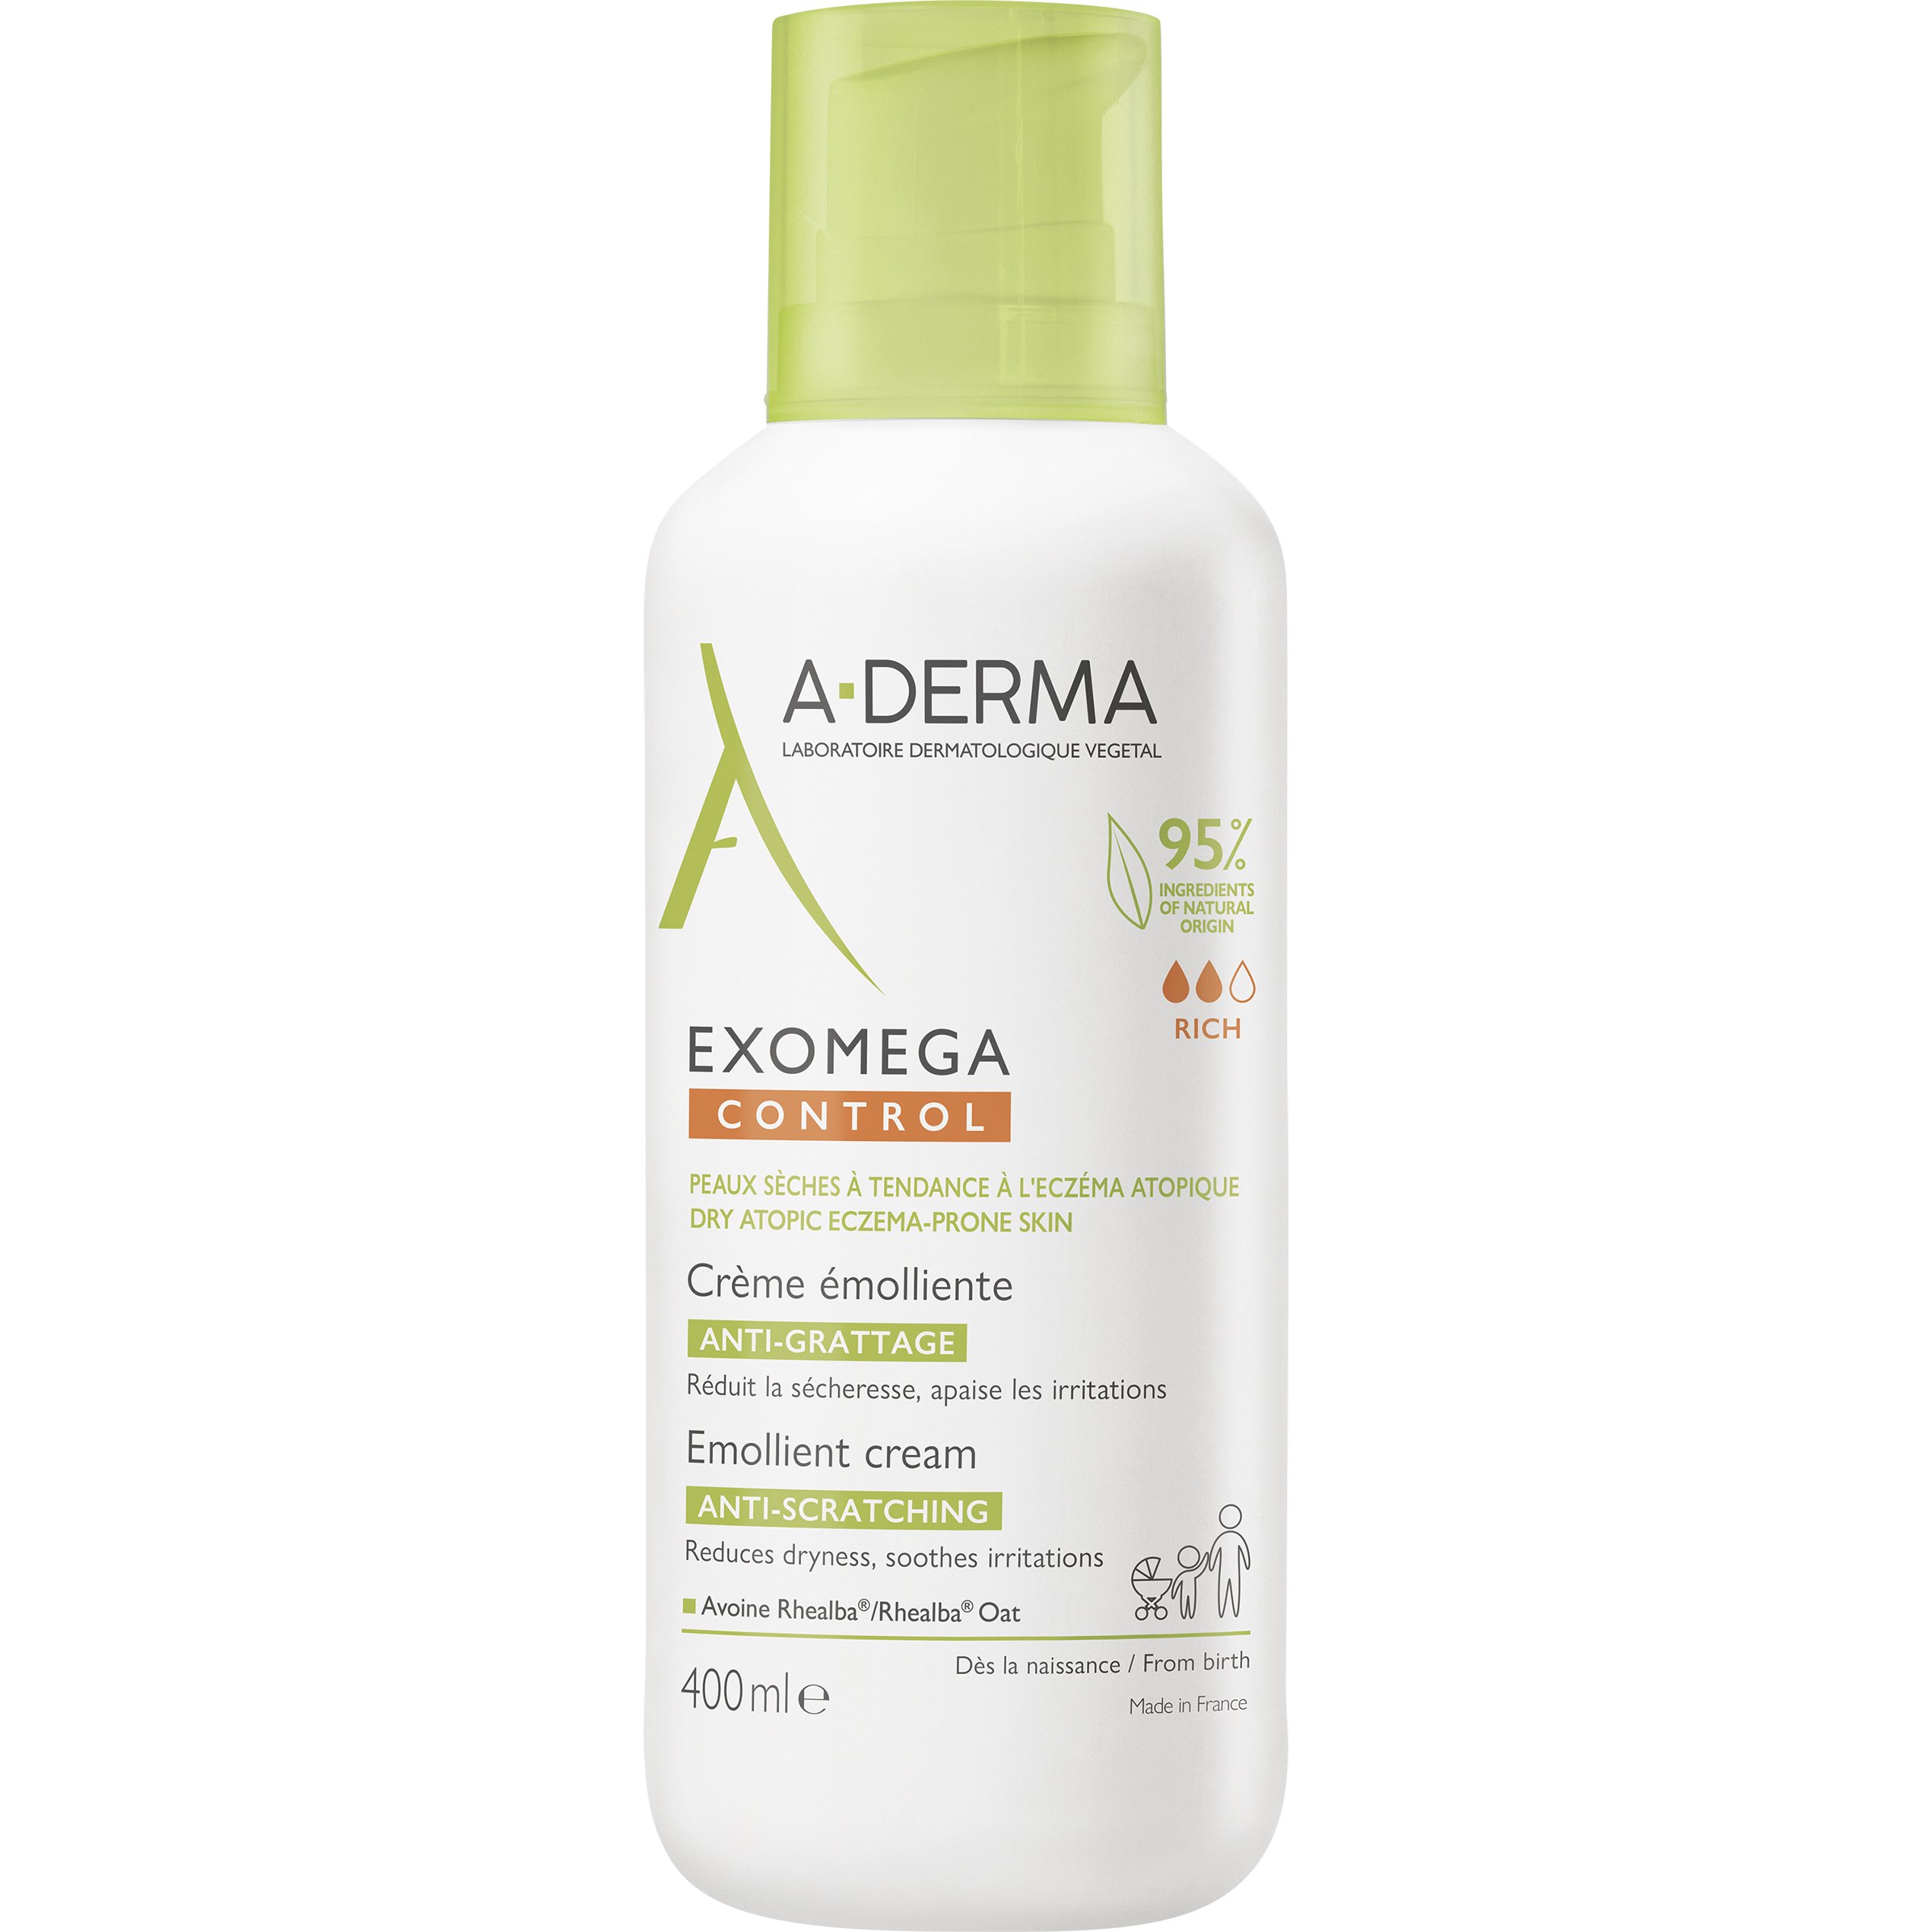 A-Derma Exomega Control Emollient Cream Μαλακτική, Καταπραϋντική Κρέμα Προσώπου – Σώματος Κατάλληλη για Ατοπικό ή Πολύ Ξηρό Δέρμα 400ml